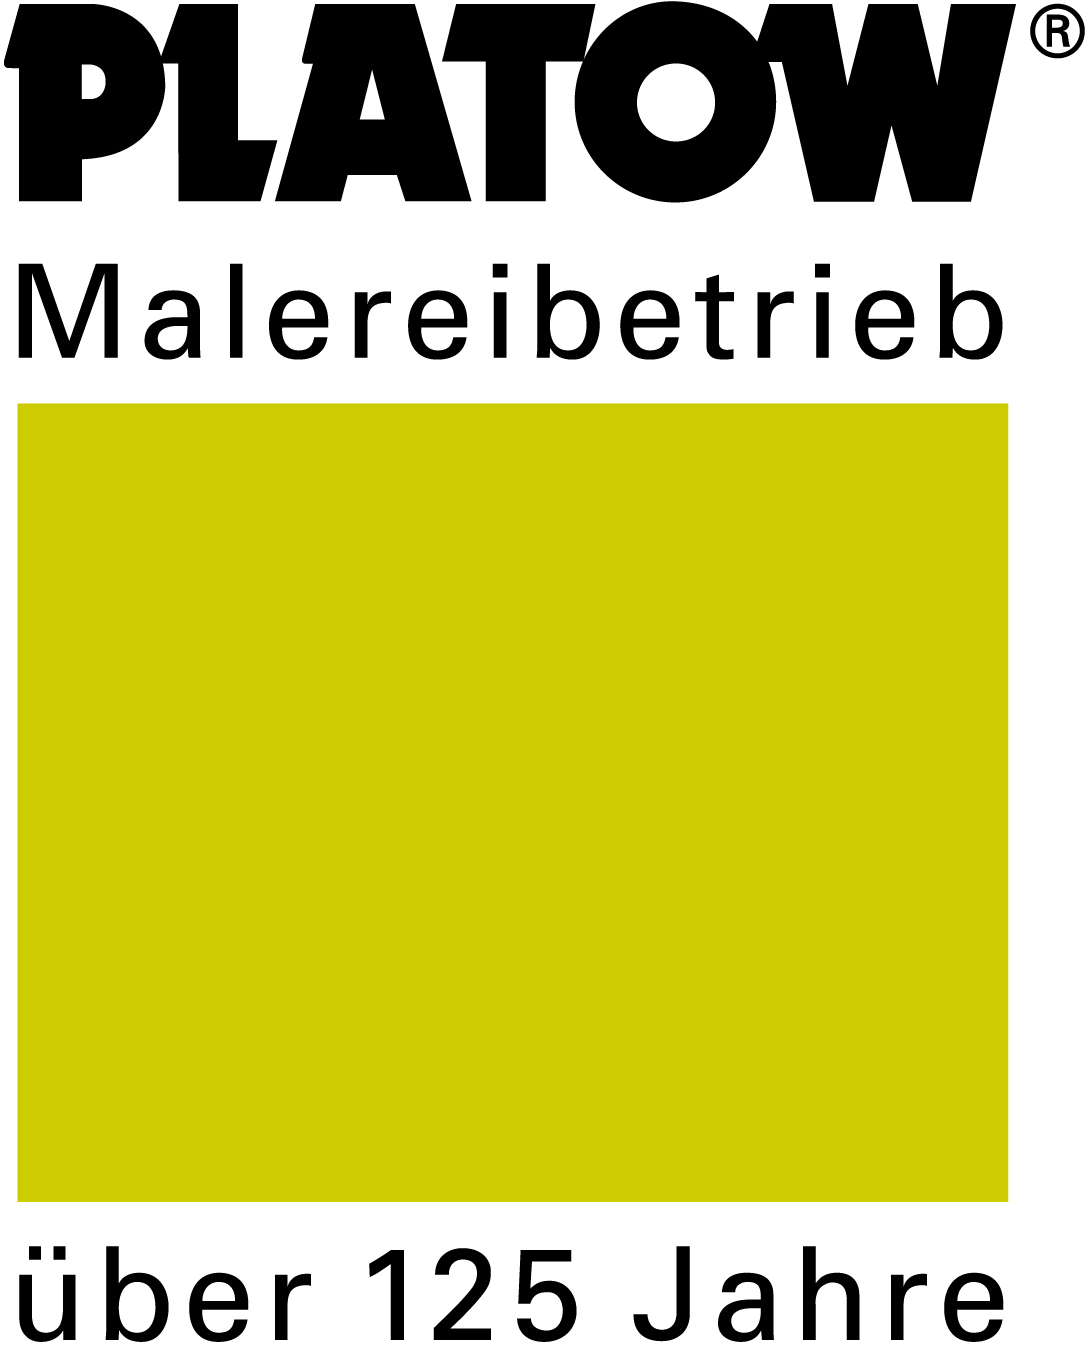 C.A. Platow & Sohn Malereibetrieb GmbH